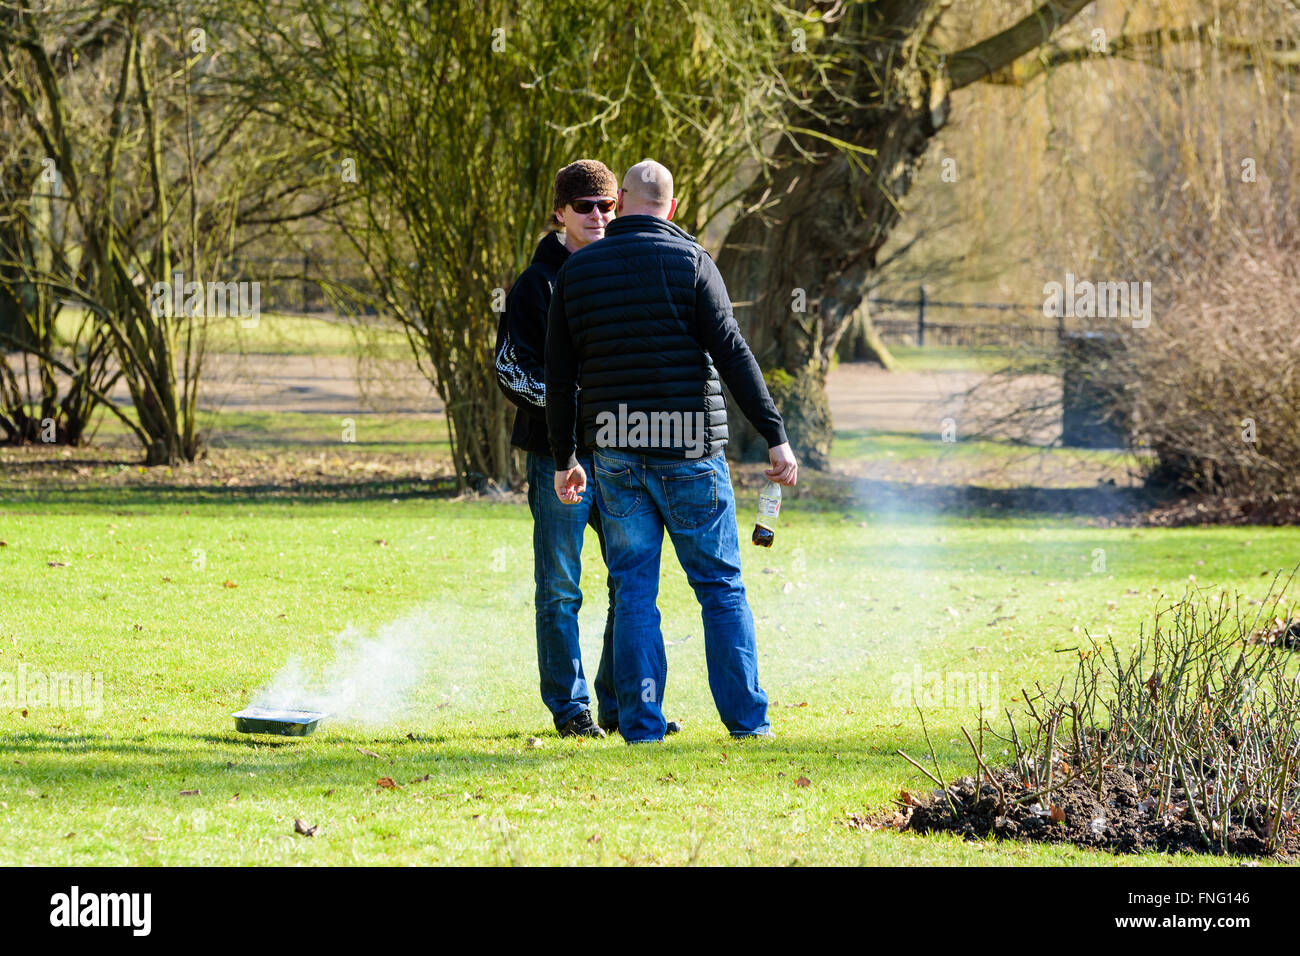 Lund, Schweden - 12. März 2016: Zwei Männchen ein Gespräch im Park haben. Neben ihnen ist ein Einweg-Grill auf dem Rasen. R Stockfoto